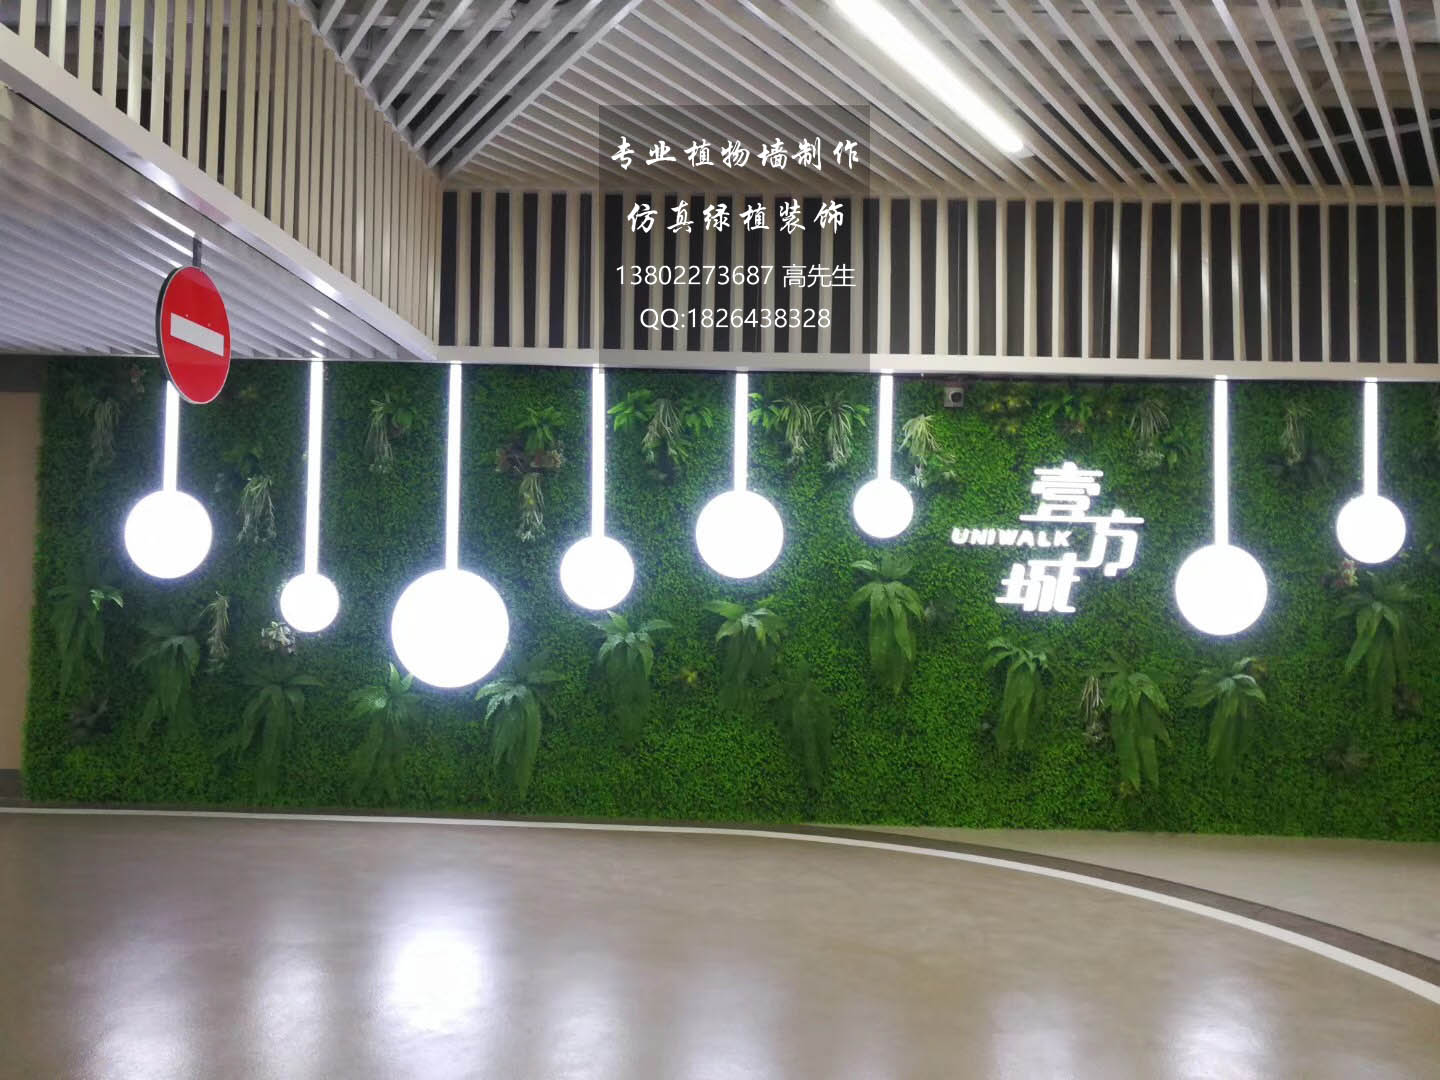 仿真植物墙装饰设计 绿植墙背景墙 绿化装饰有限公司